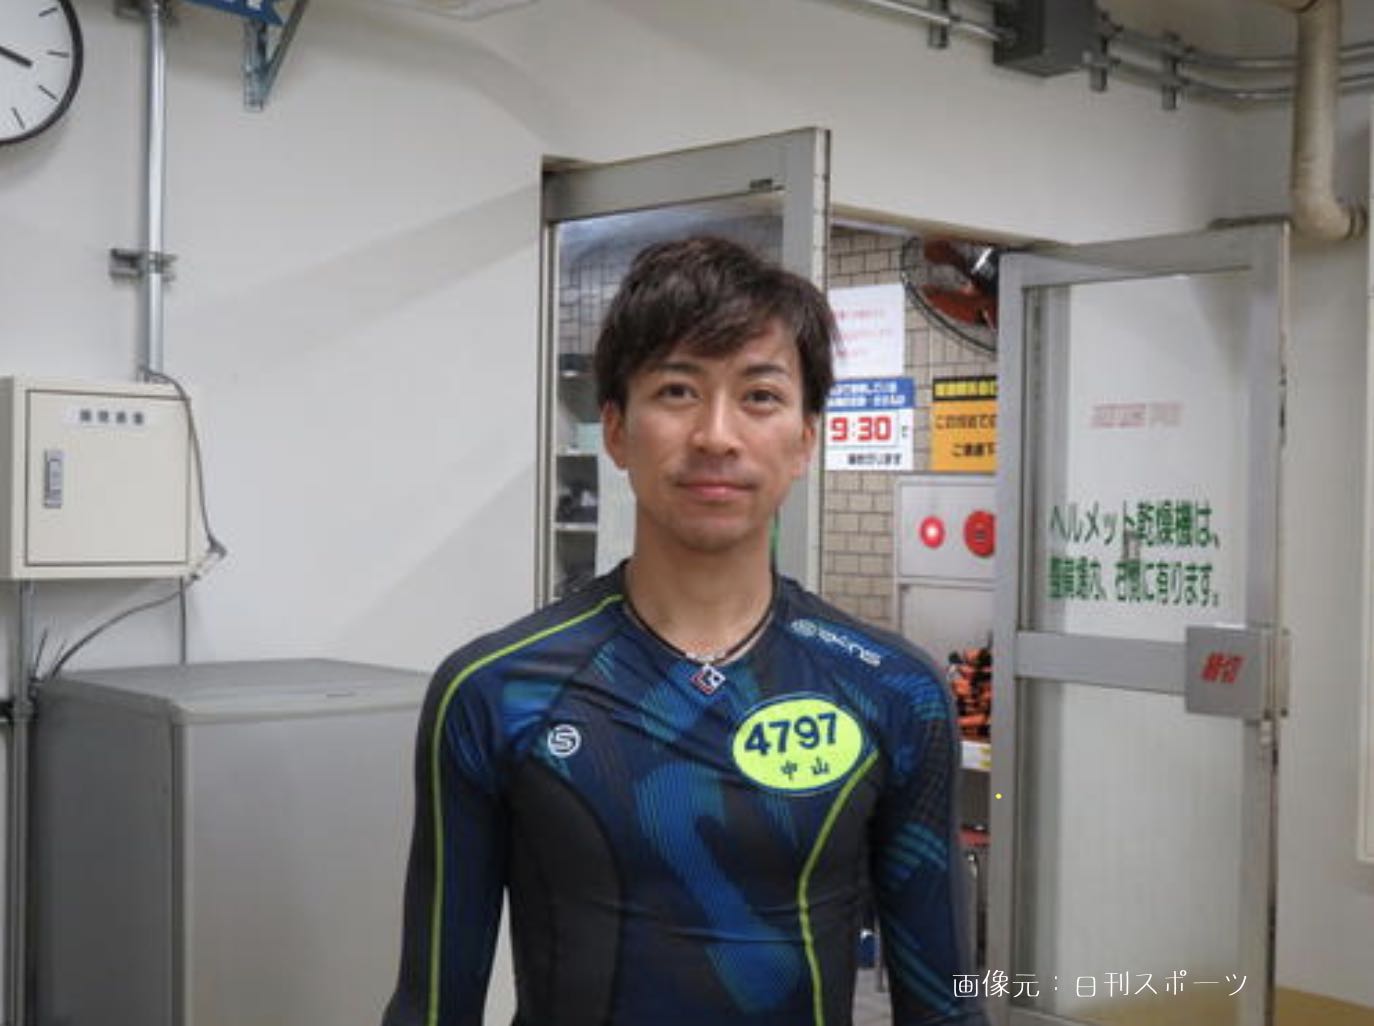 中山将競艇選手の画像